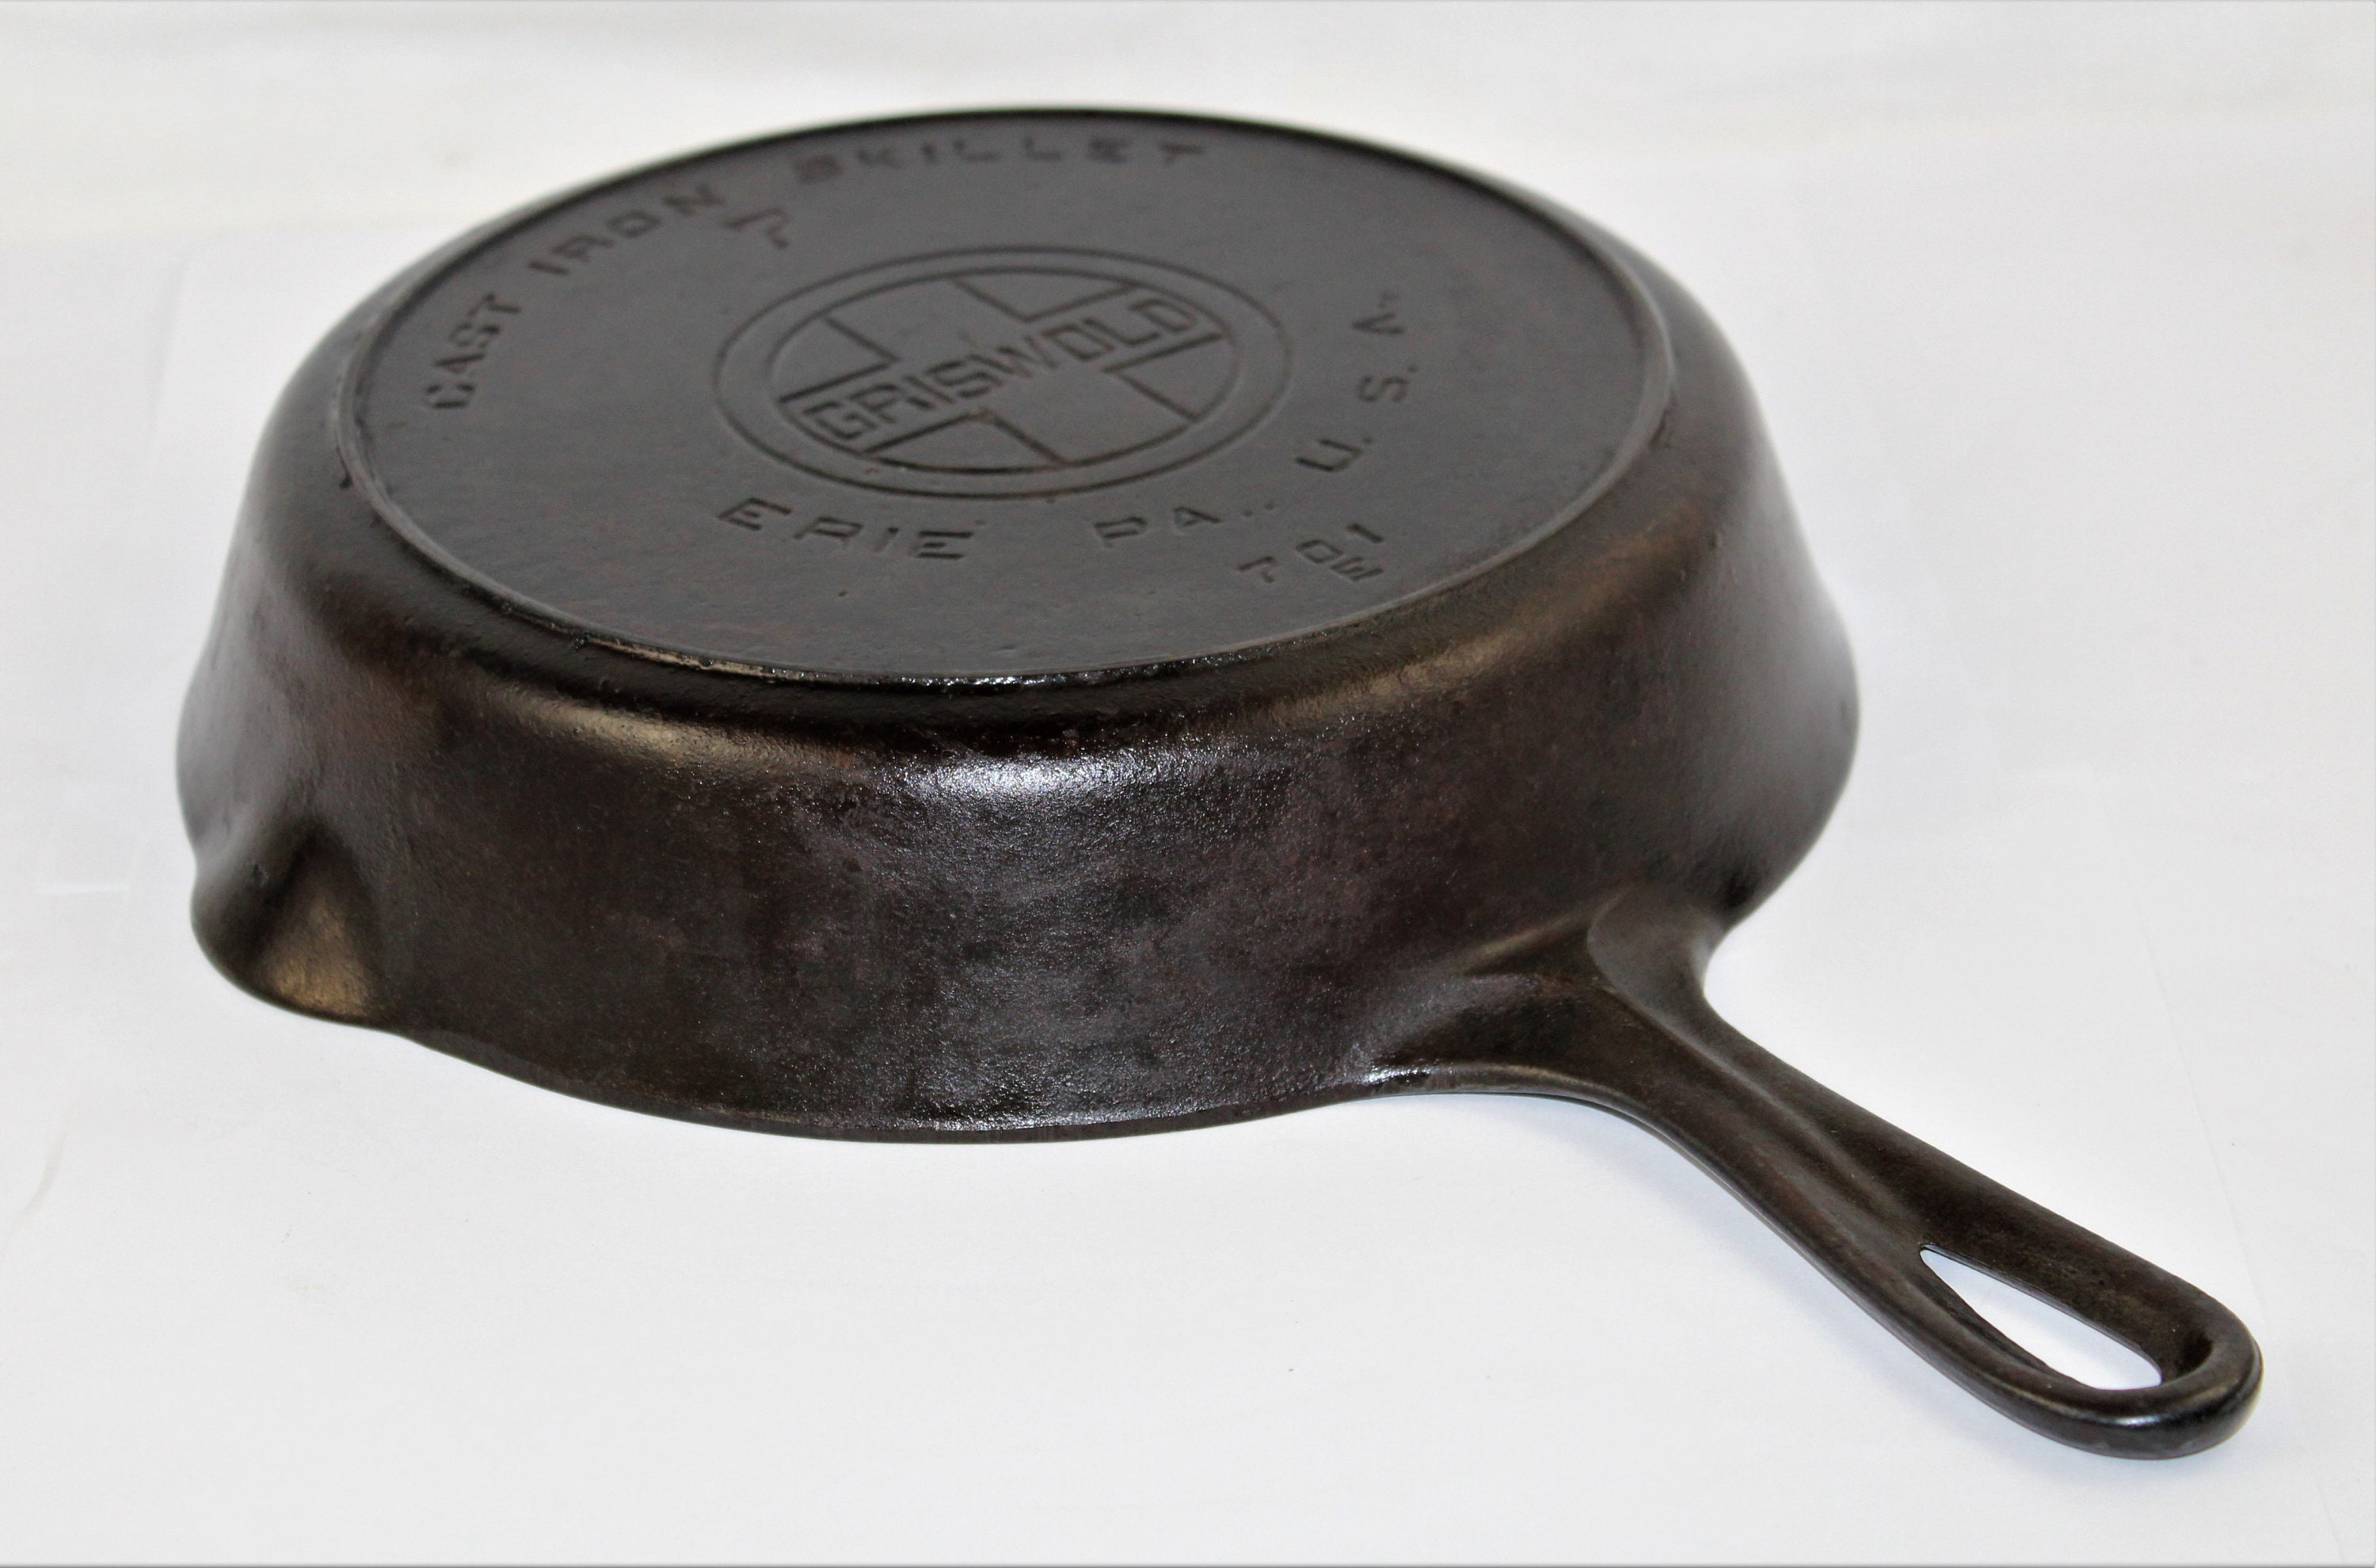 Griswold Cast Iron Cookware Part 6 #castiron #antique #history